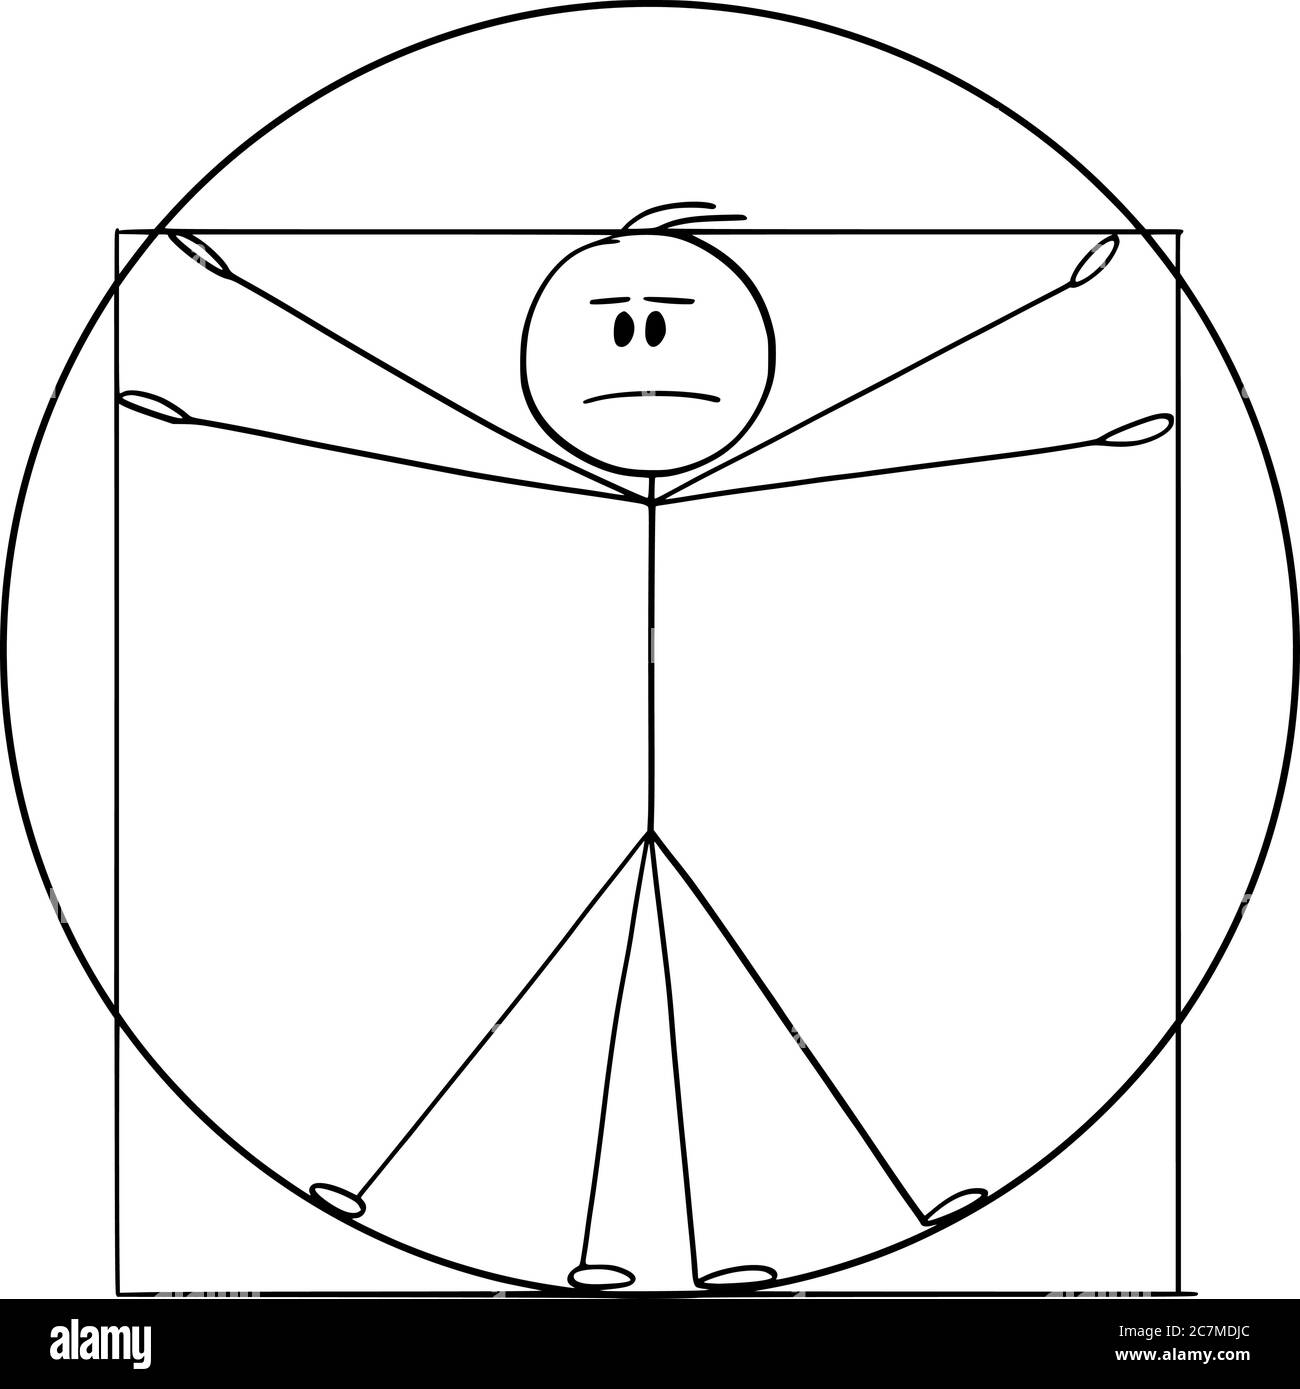 Vektor Cartoon Stick Figur Zeichnung konzeptionelle Illustration von Vitruvian Mann, basierend auf Renaissance-Zeichnung von Leonardo da Vinci repräsentiert ideale menschliche Proportionen. Stock Vektor